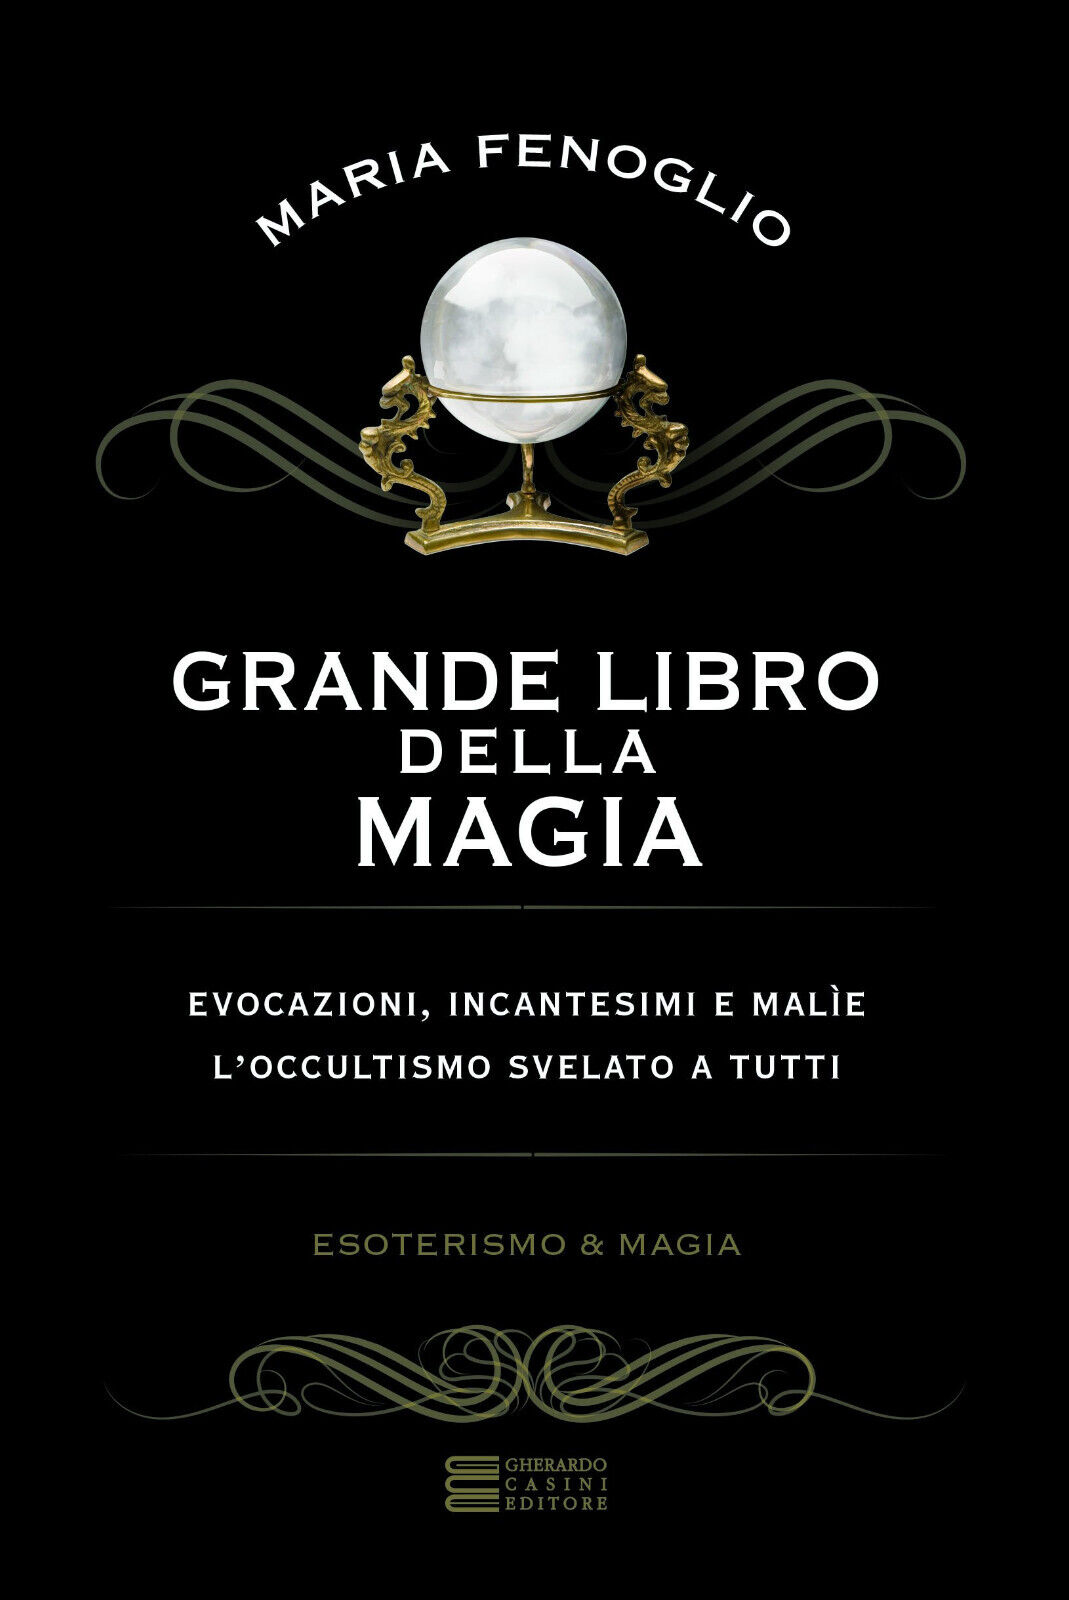 Grande libro della magia - Maria Fenoglio - Gherardo Casini, 2017 libro usato